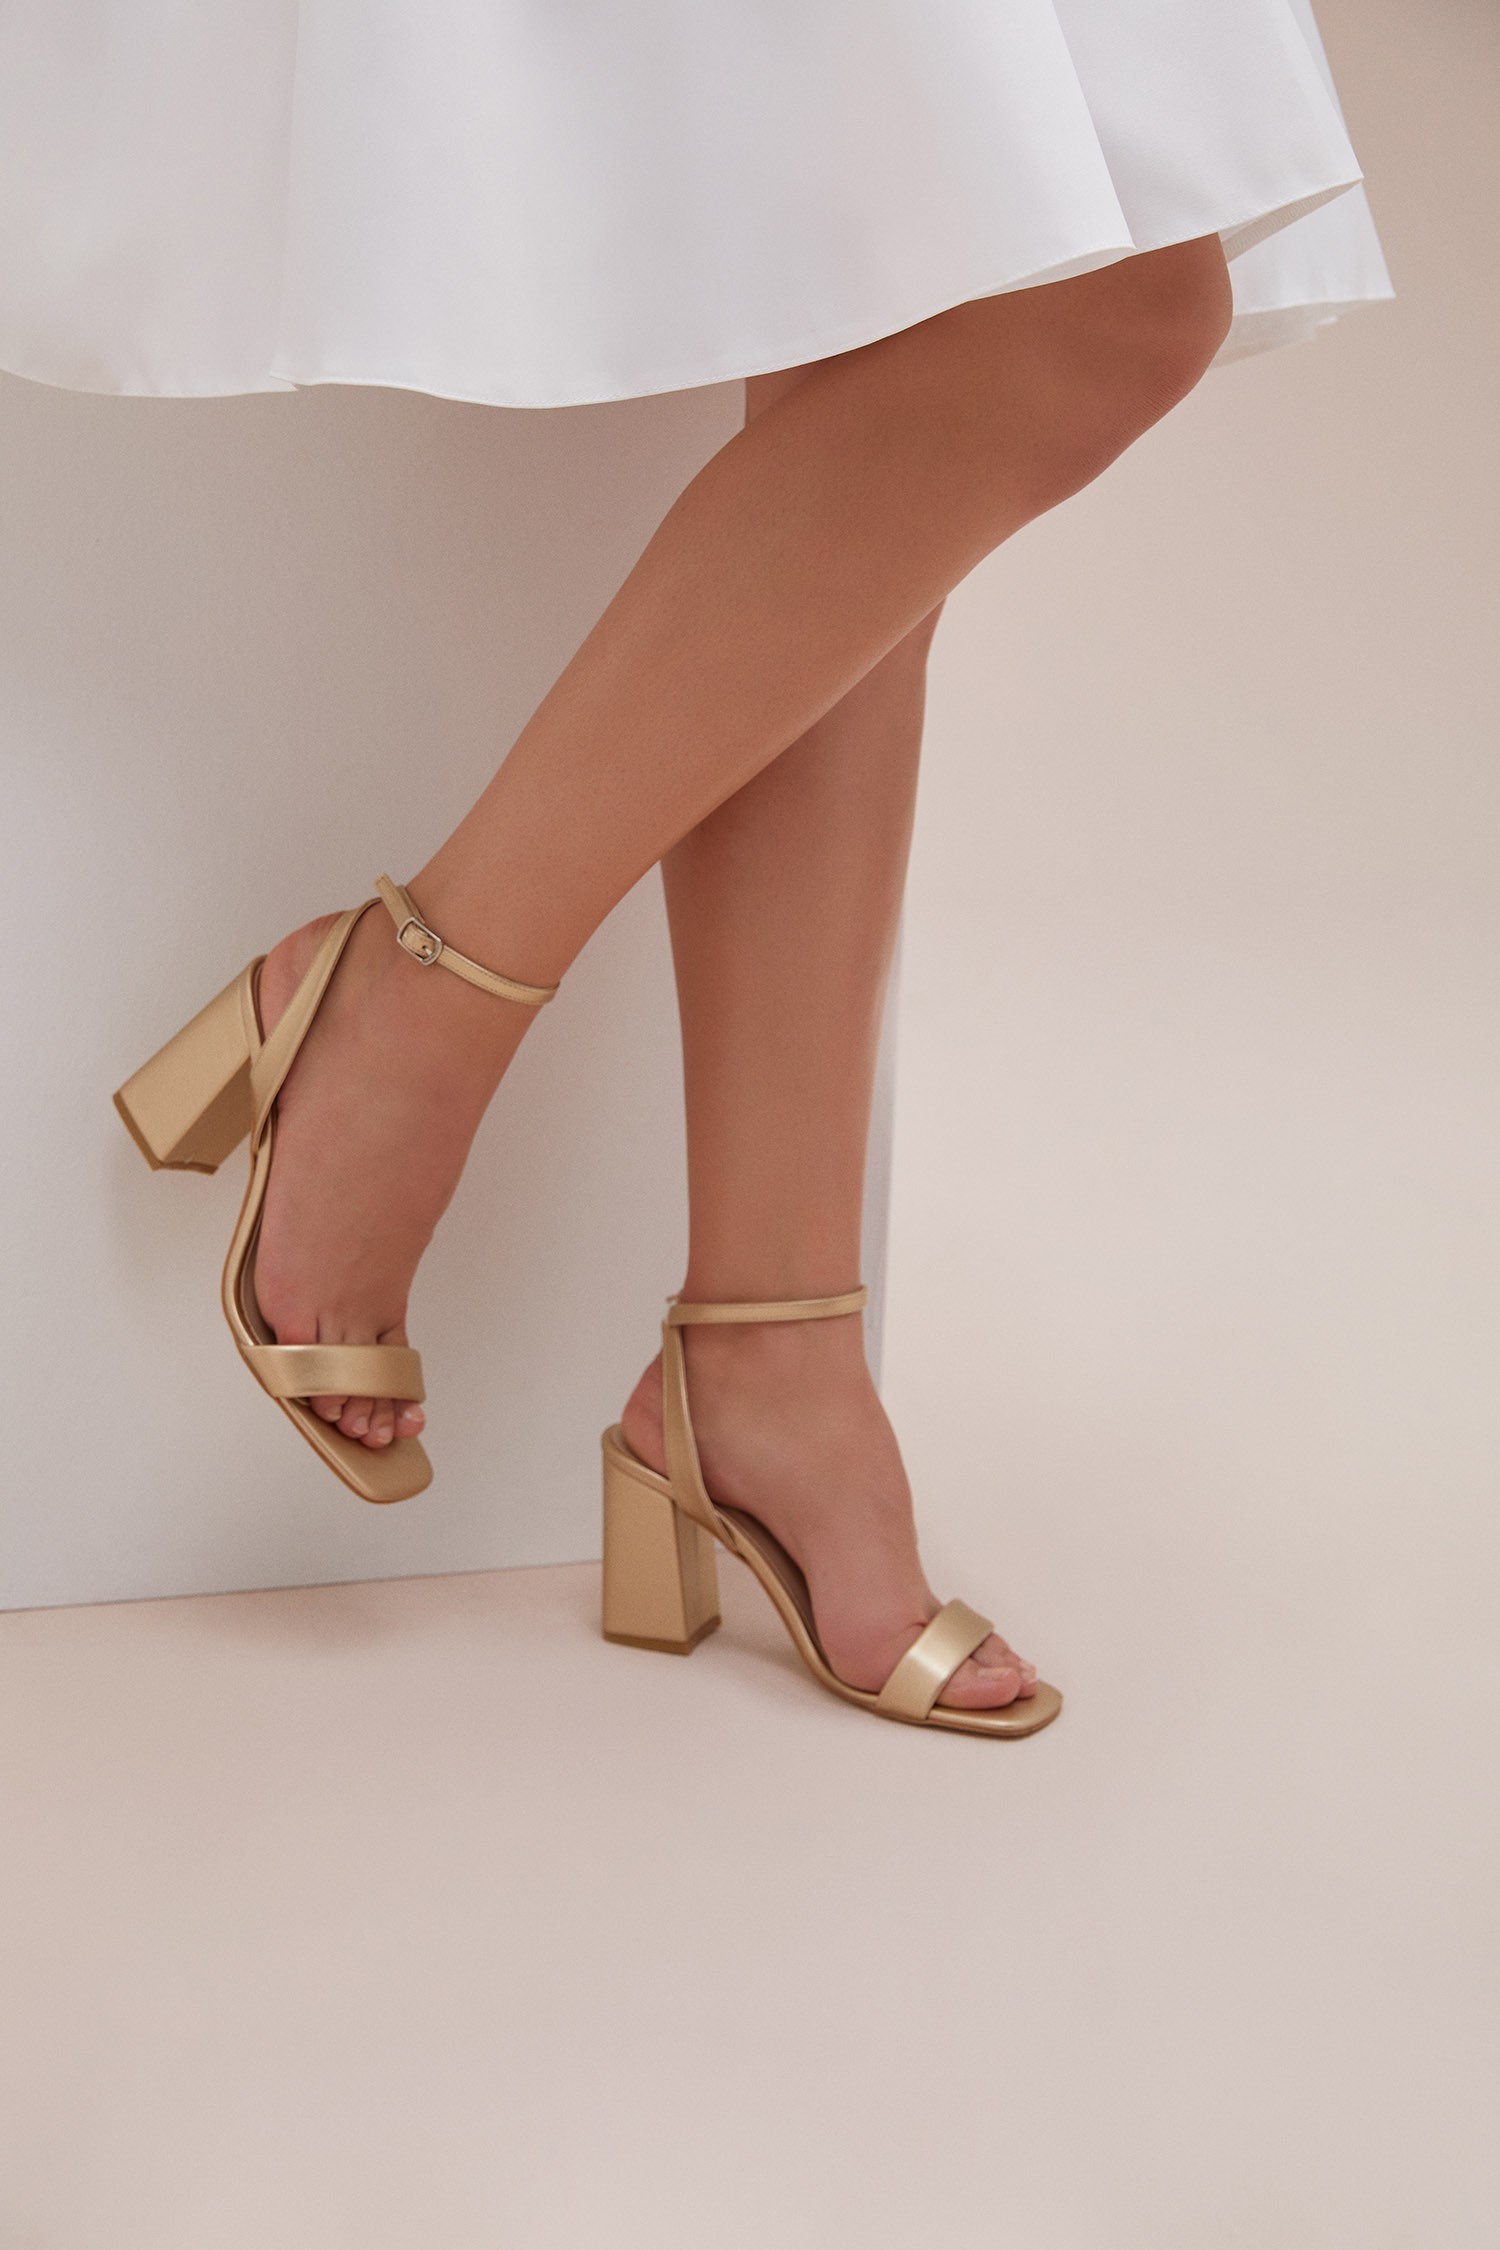 Gold Rengi İnce Bantlı Kalın Topuklu Abiye Ayakkabısı